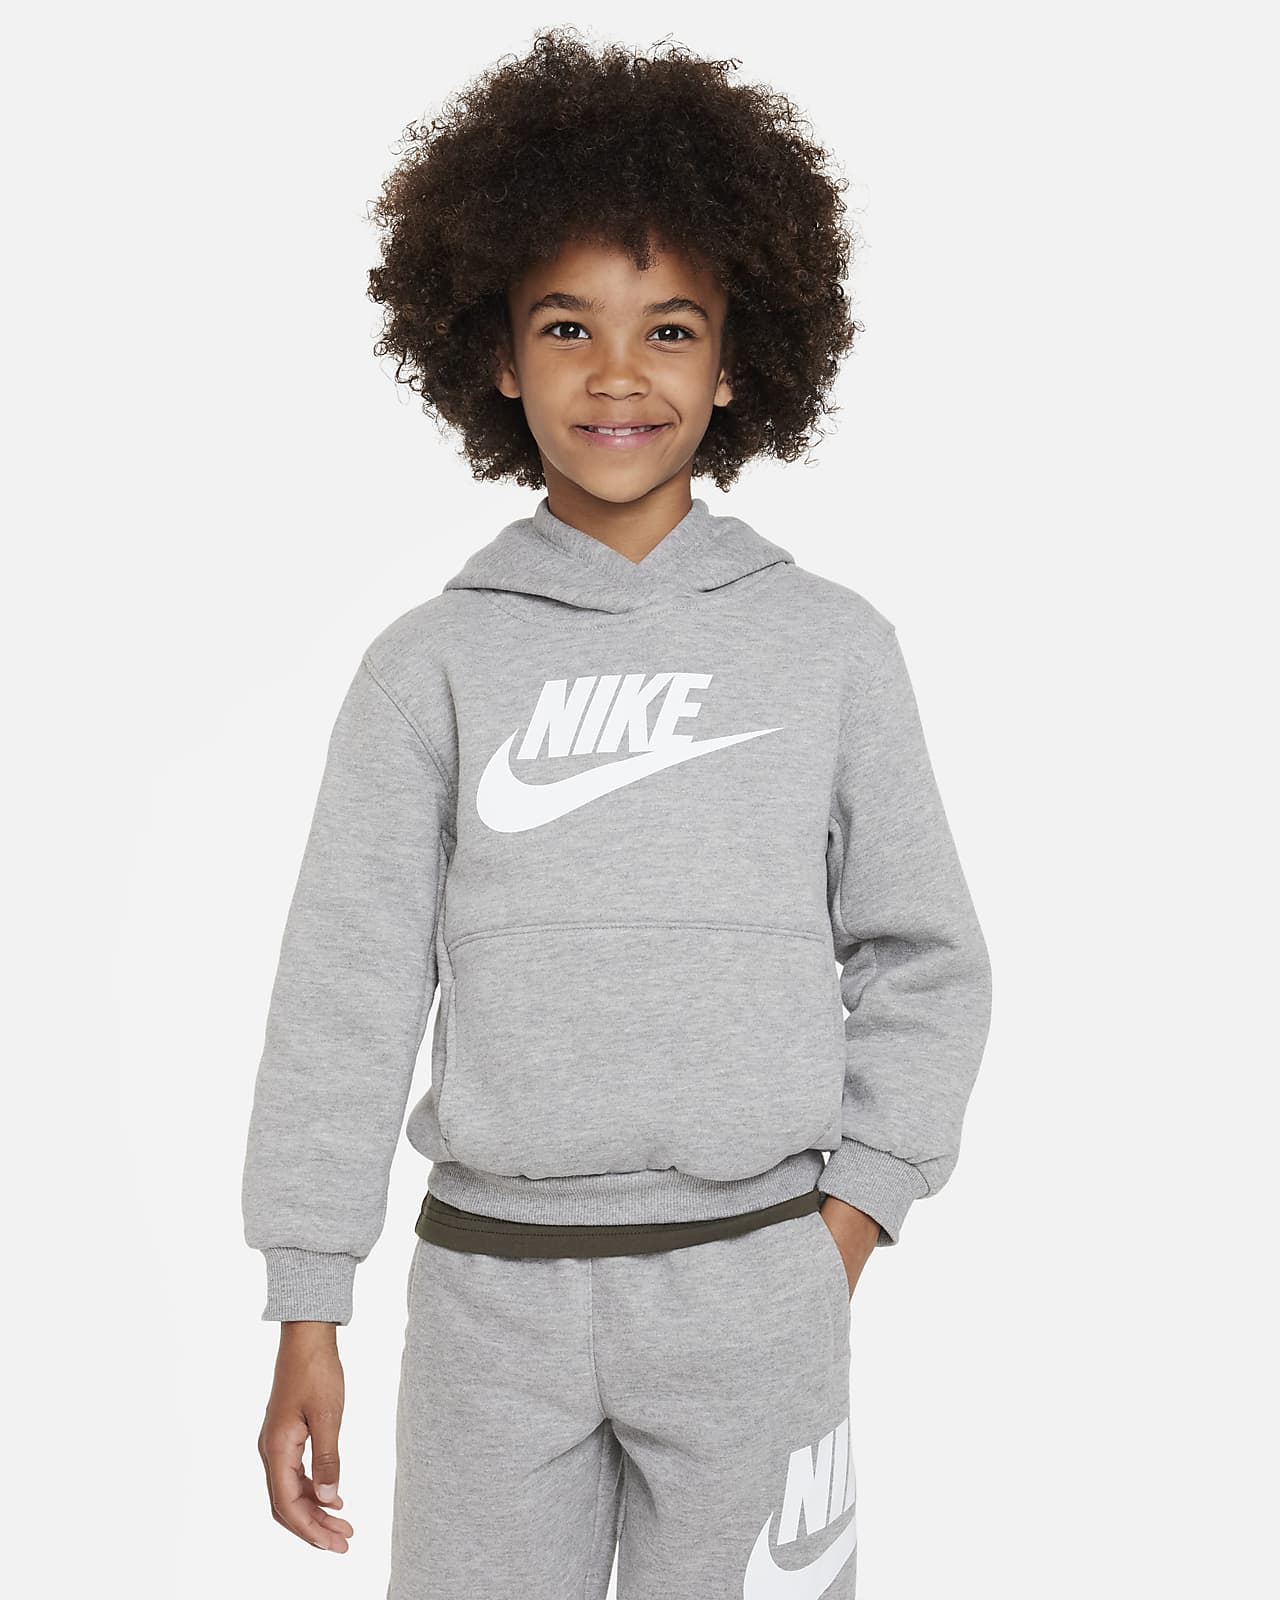 Kids Nike Fleece Hoodie. Club Pullover Sportswear Little